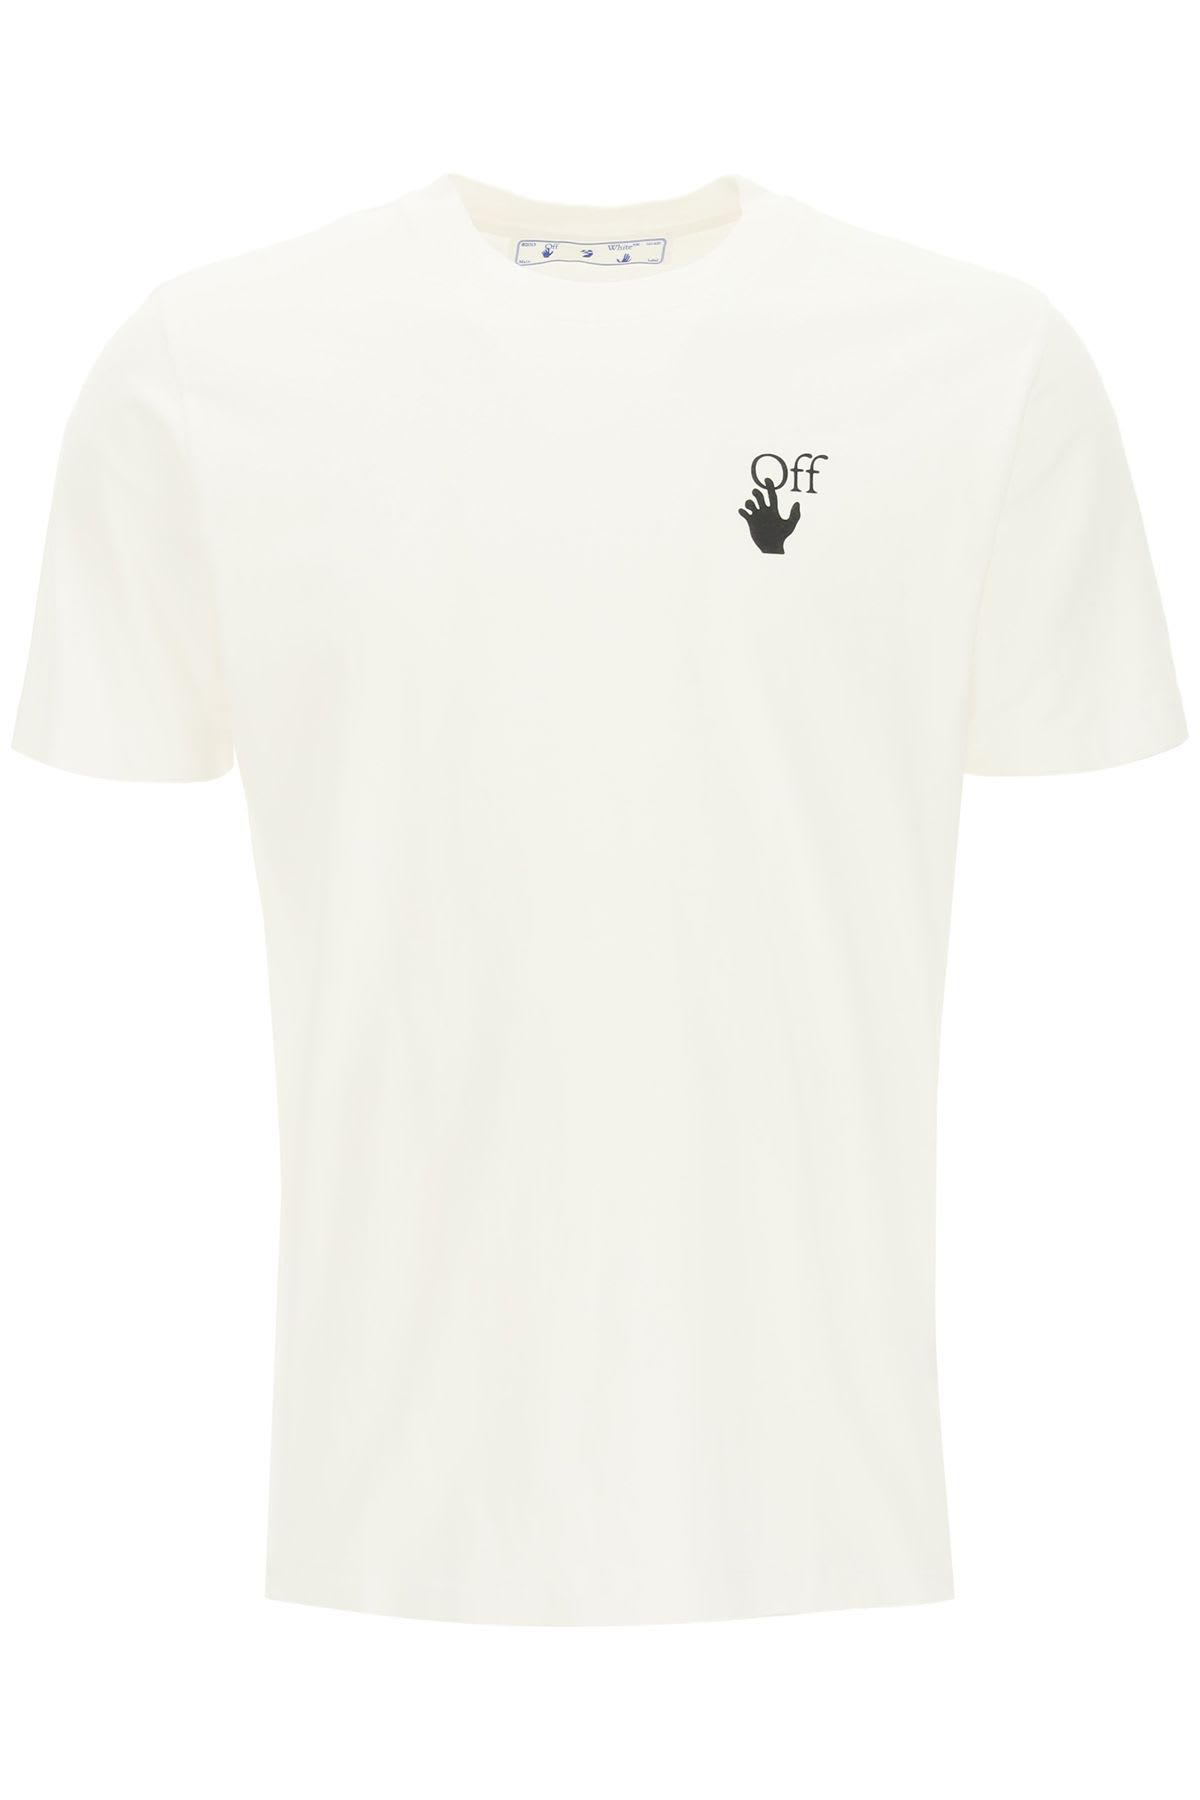 Off-White Bubble Arrow T-shirt